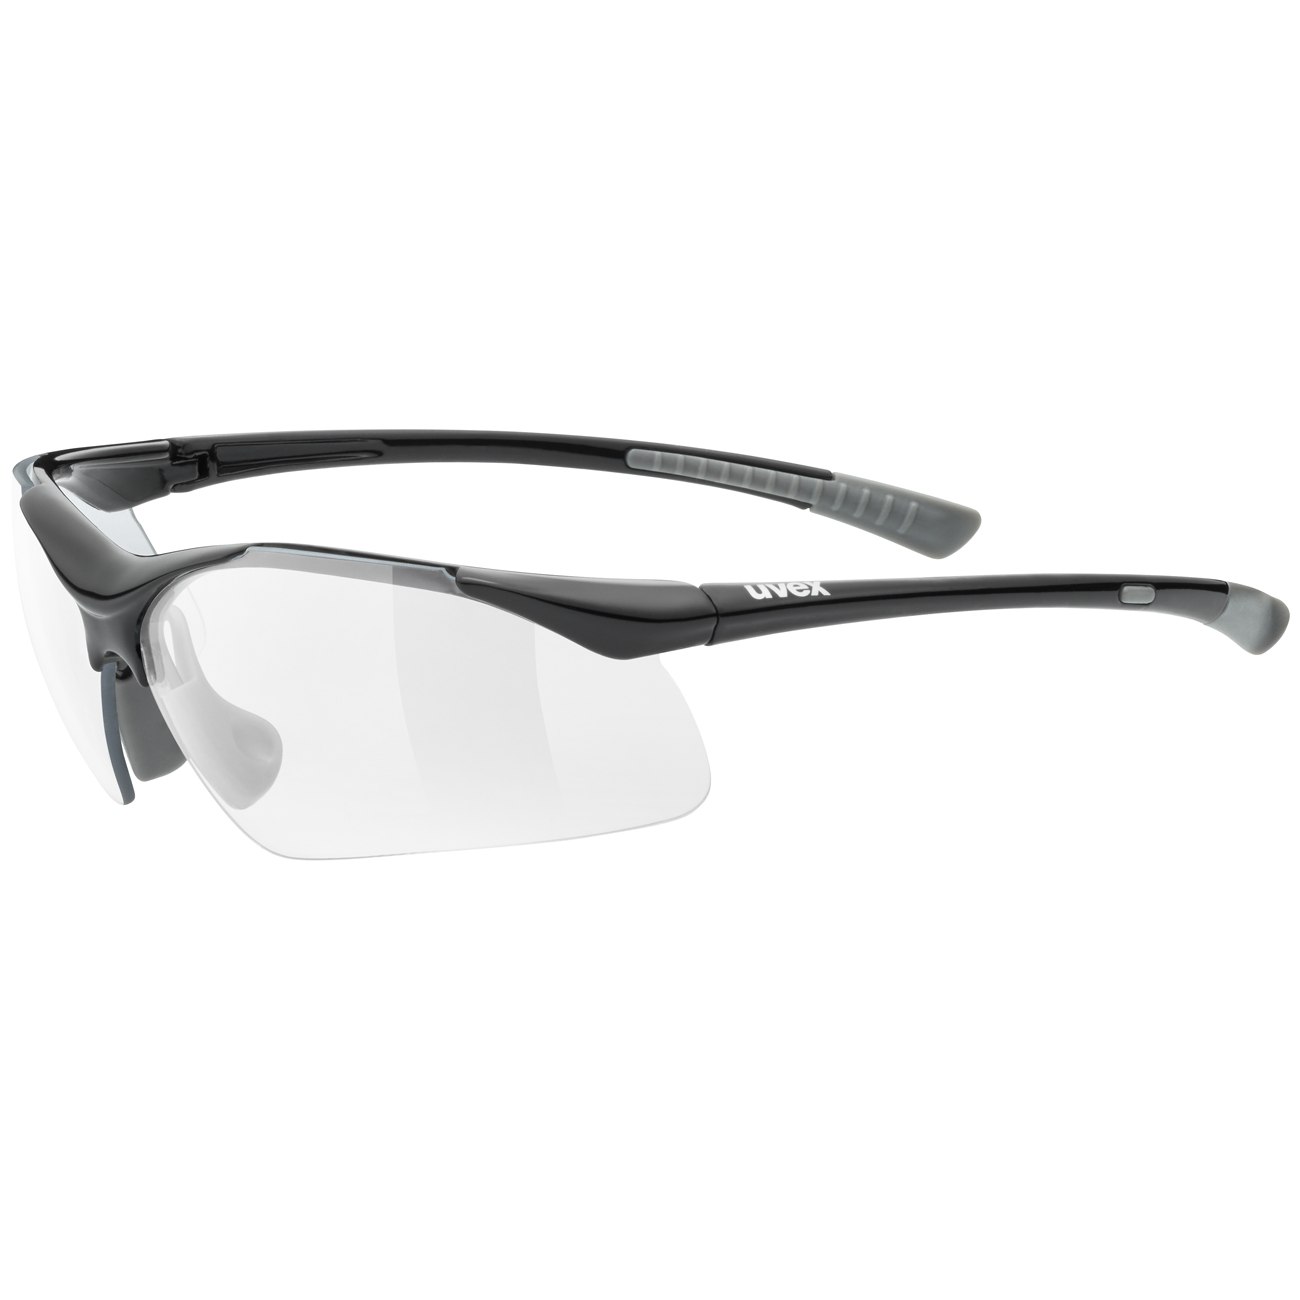 Produktbild von Uvex sportstyle 223 Brille - black grey/clear